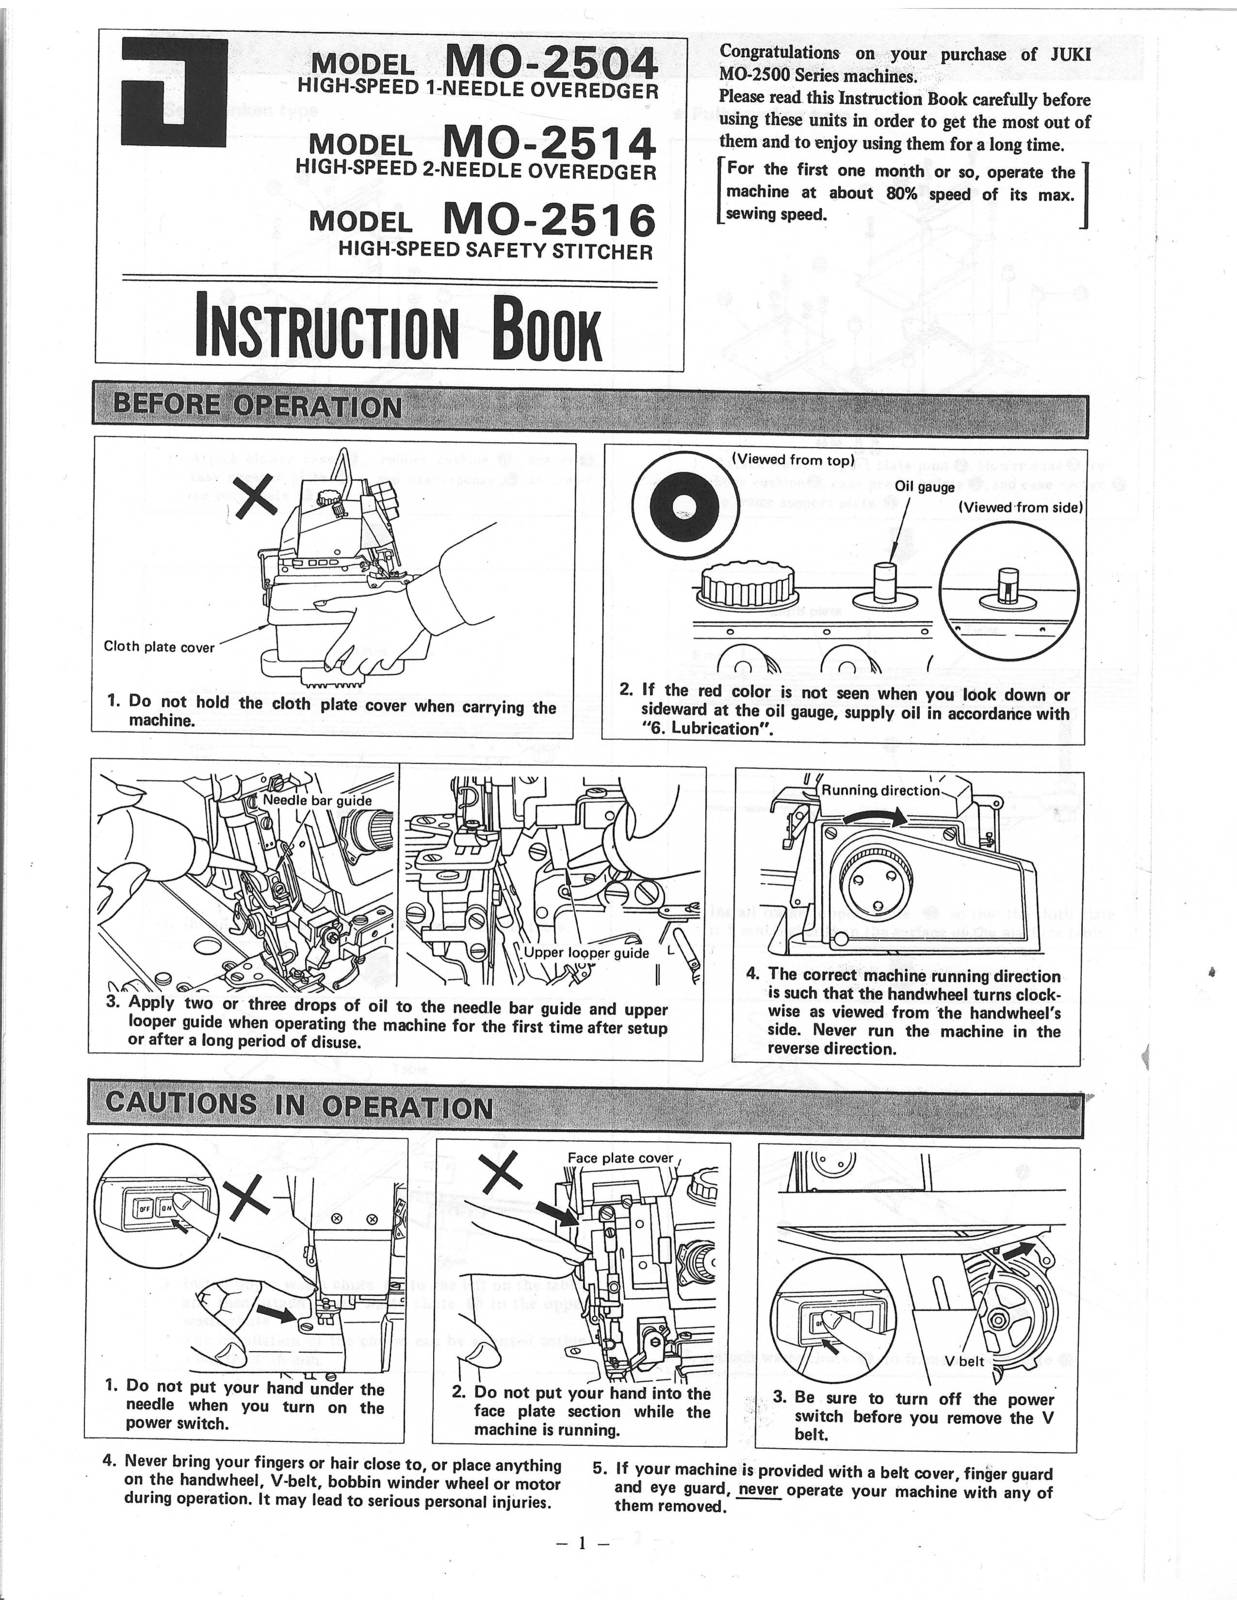 Tokyo Juki MO-2504 MO-2514 MO-2516 Instruction Book - $12.99